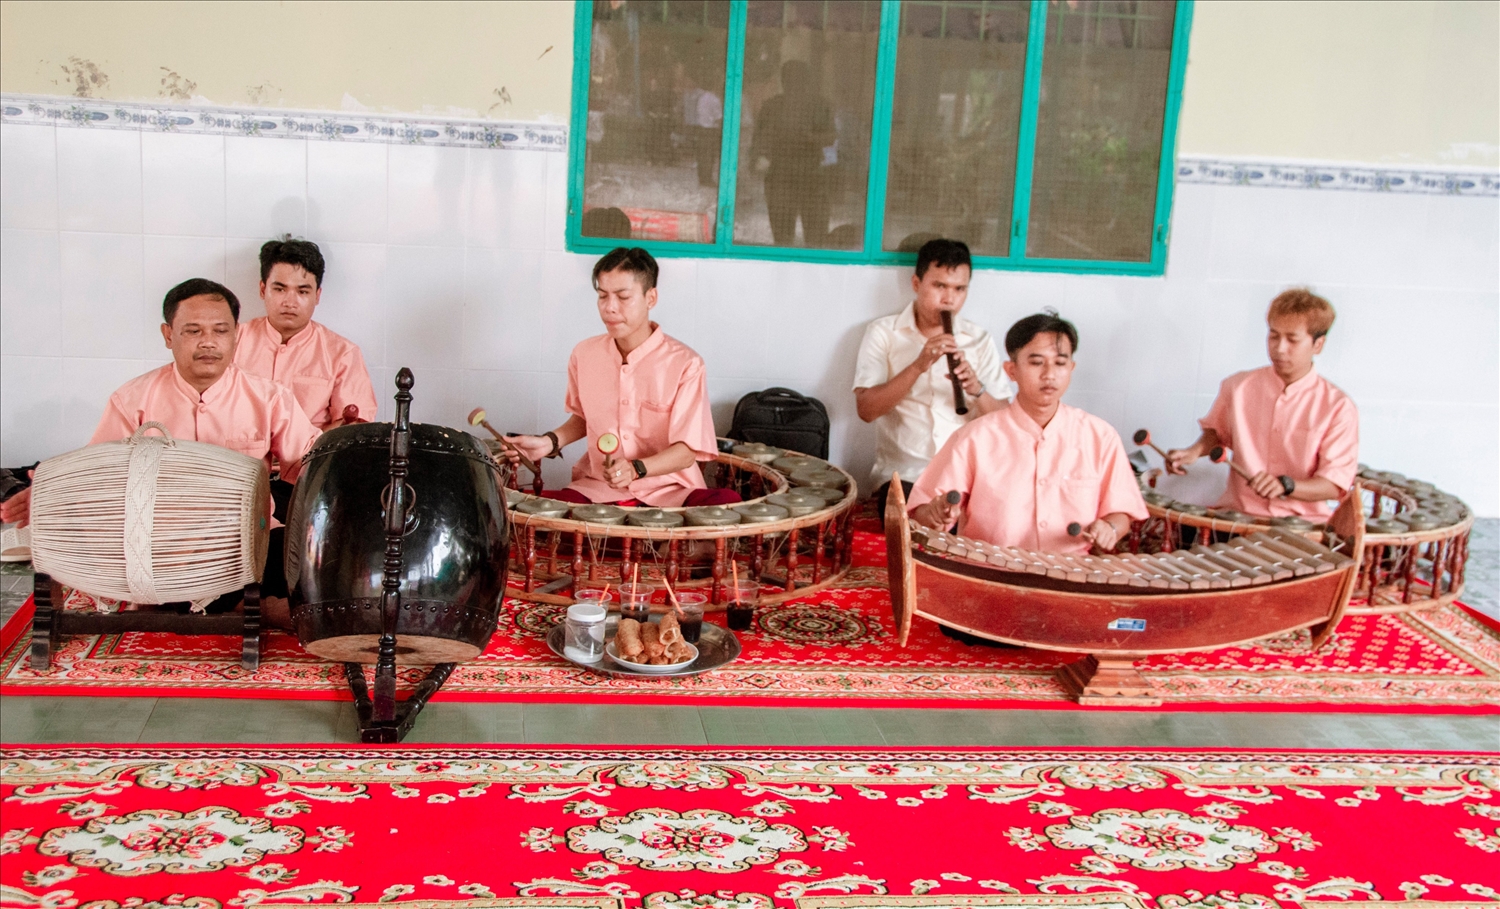 Các chùa Khmer được quan tâm đều tư cơ sở hạ tầng và nhạc cụ truyền thống dân tộc ( Đội nhạc Ngũ âm Chùa Monivongsa Bopharam)